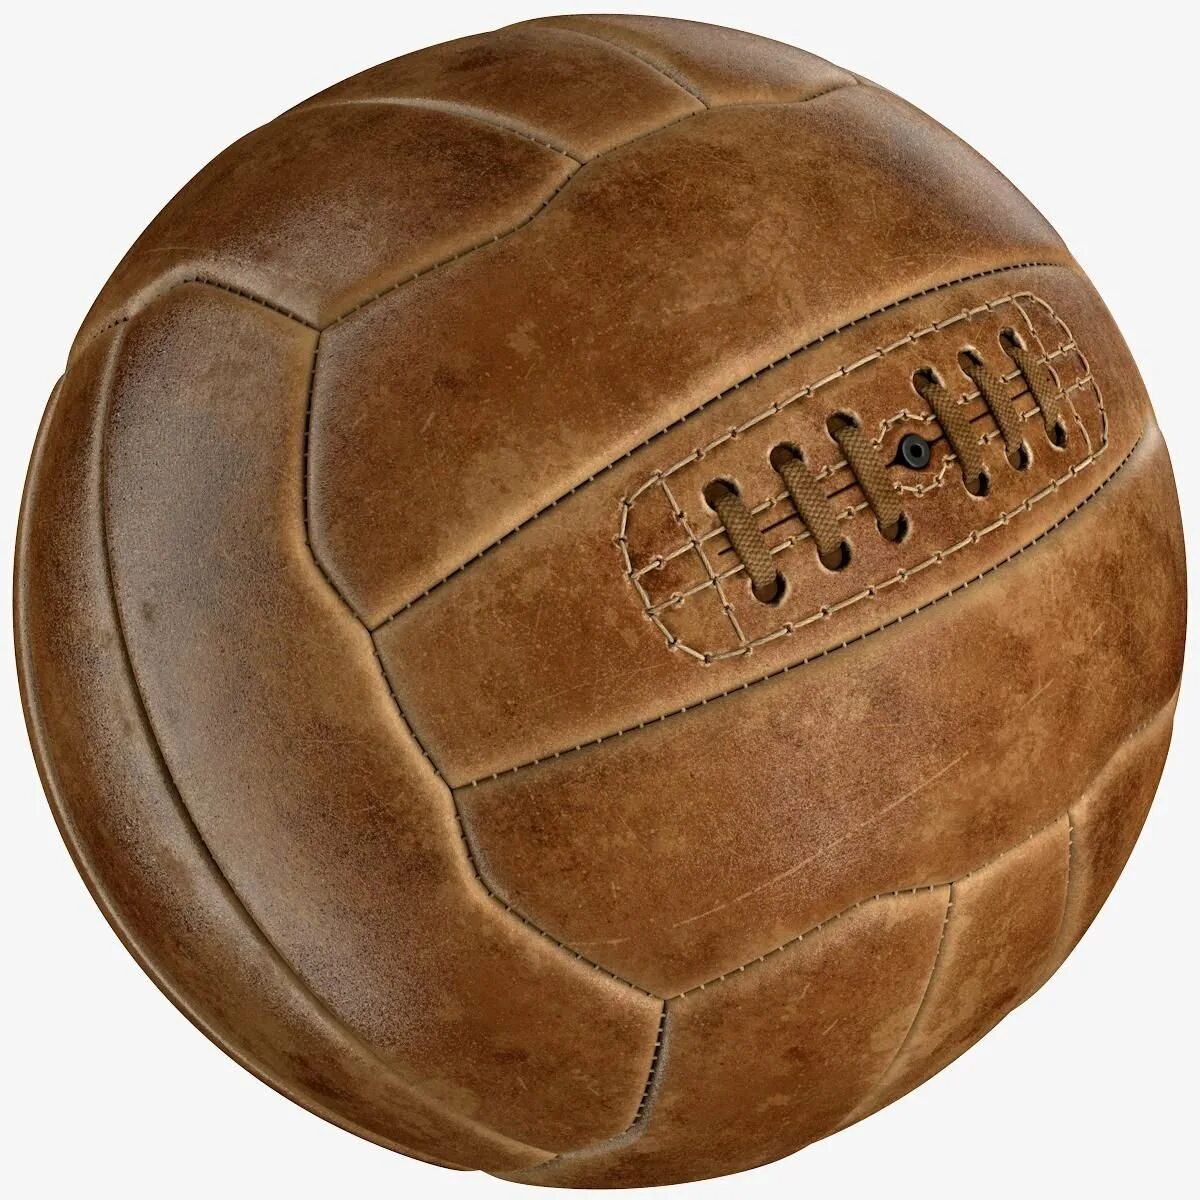 Первый мяч в футболе. Мяч футбольный KIPSTA 3. Старый футбольный мяч. Кожаный футбольный мяч. Кожаный футбольный мяч ретро.